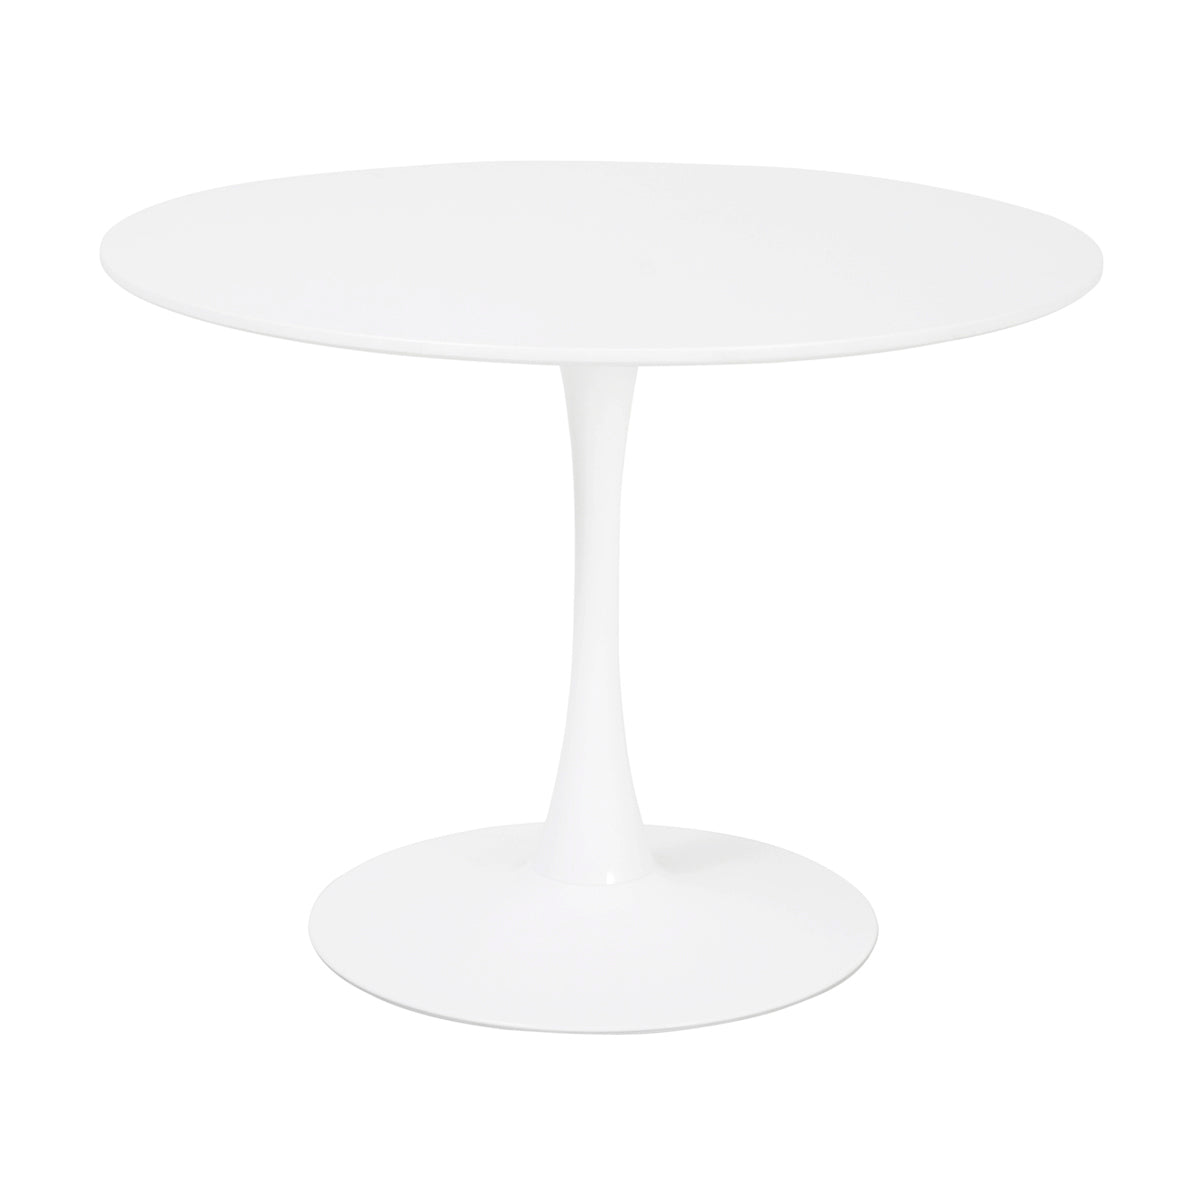 Table à manger ronde pour 4 à 5 personnes diamètre 100 cm, finition laquée mate blanche, base ronde en métal avec revêtement en epoxy blanc - TULIPS